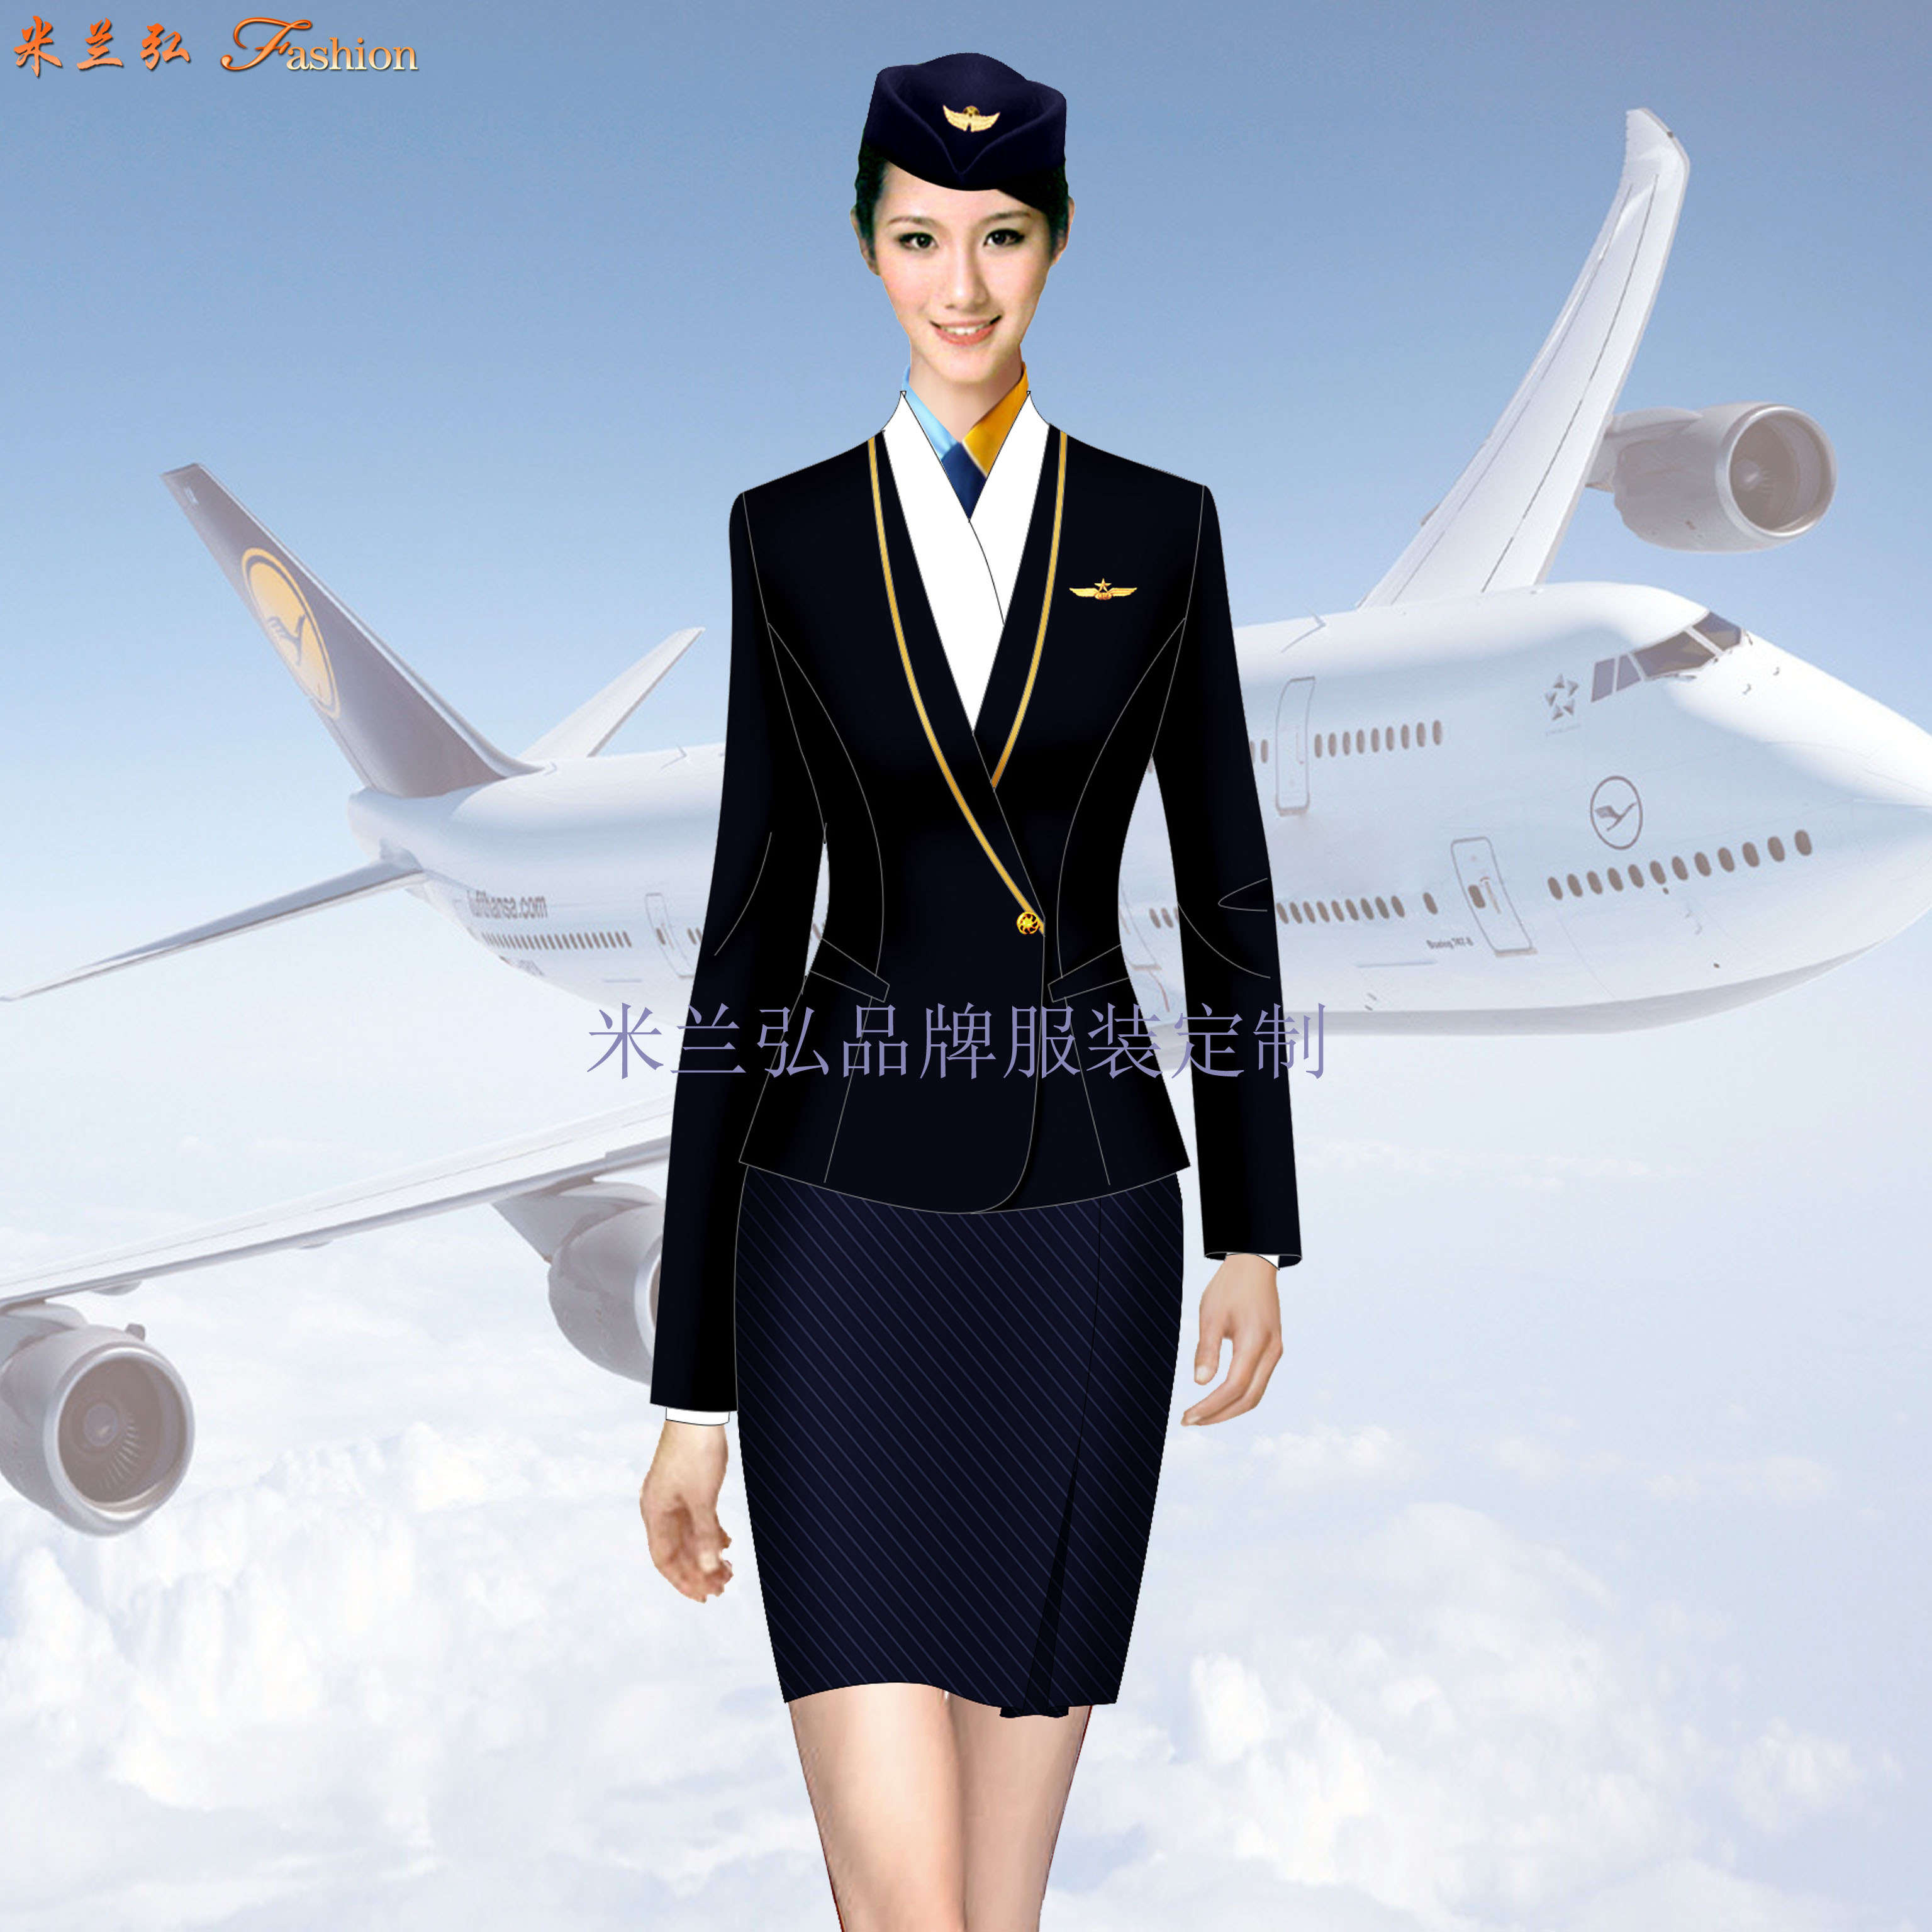 「女裝空姐服定做」定做空姐服廠家-米蘭弘品牌服裝-1